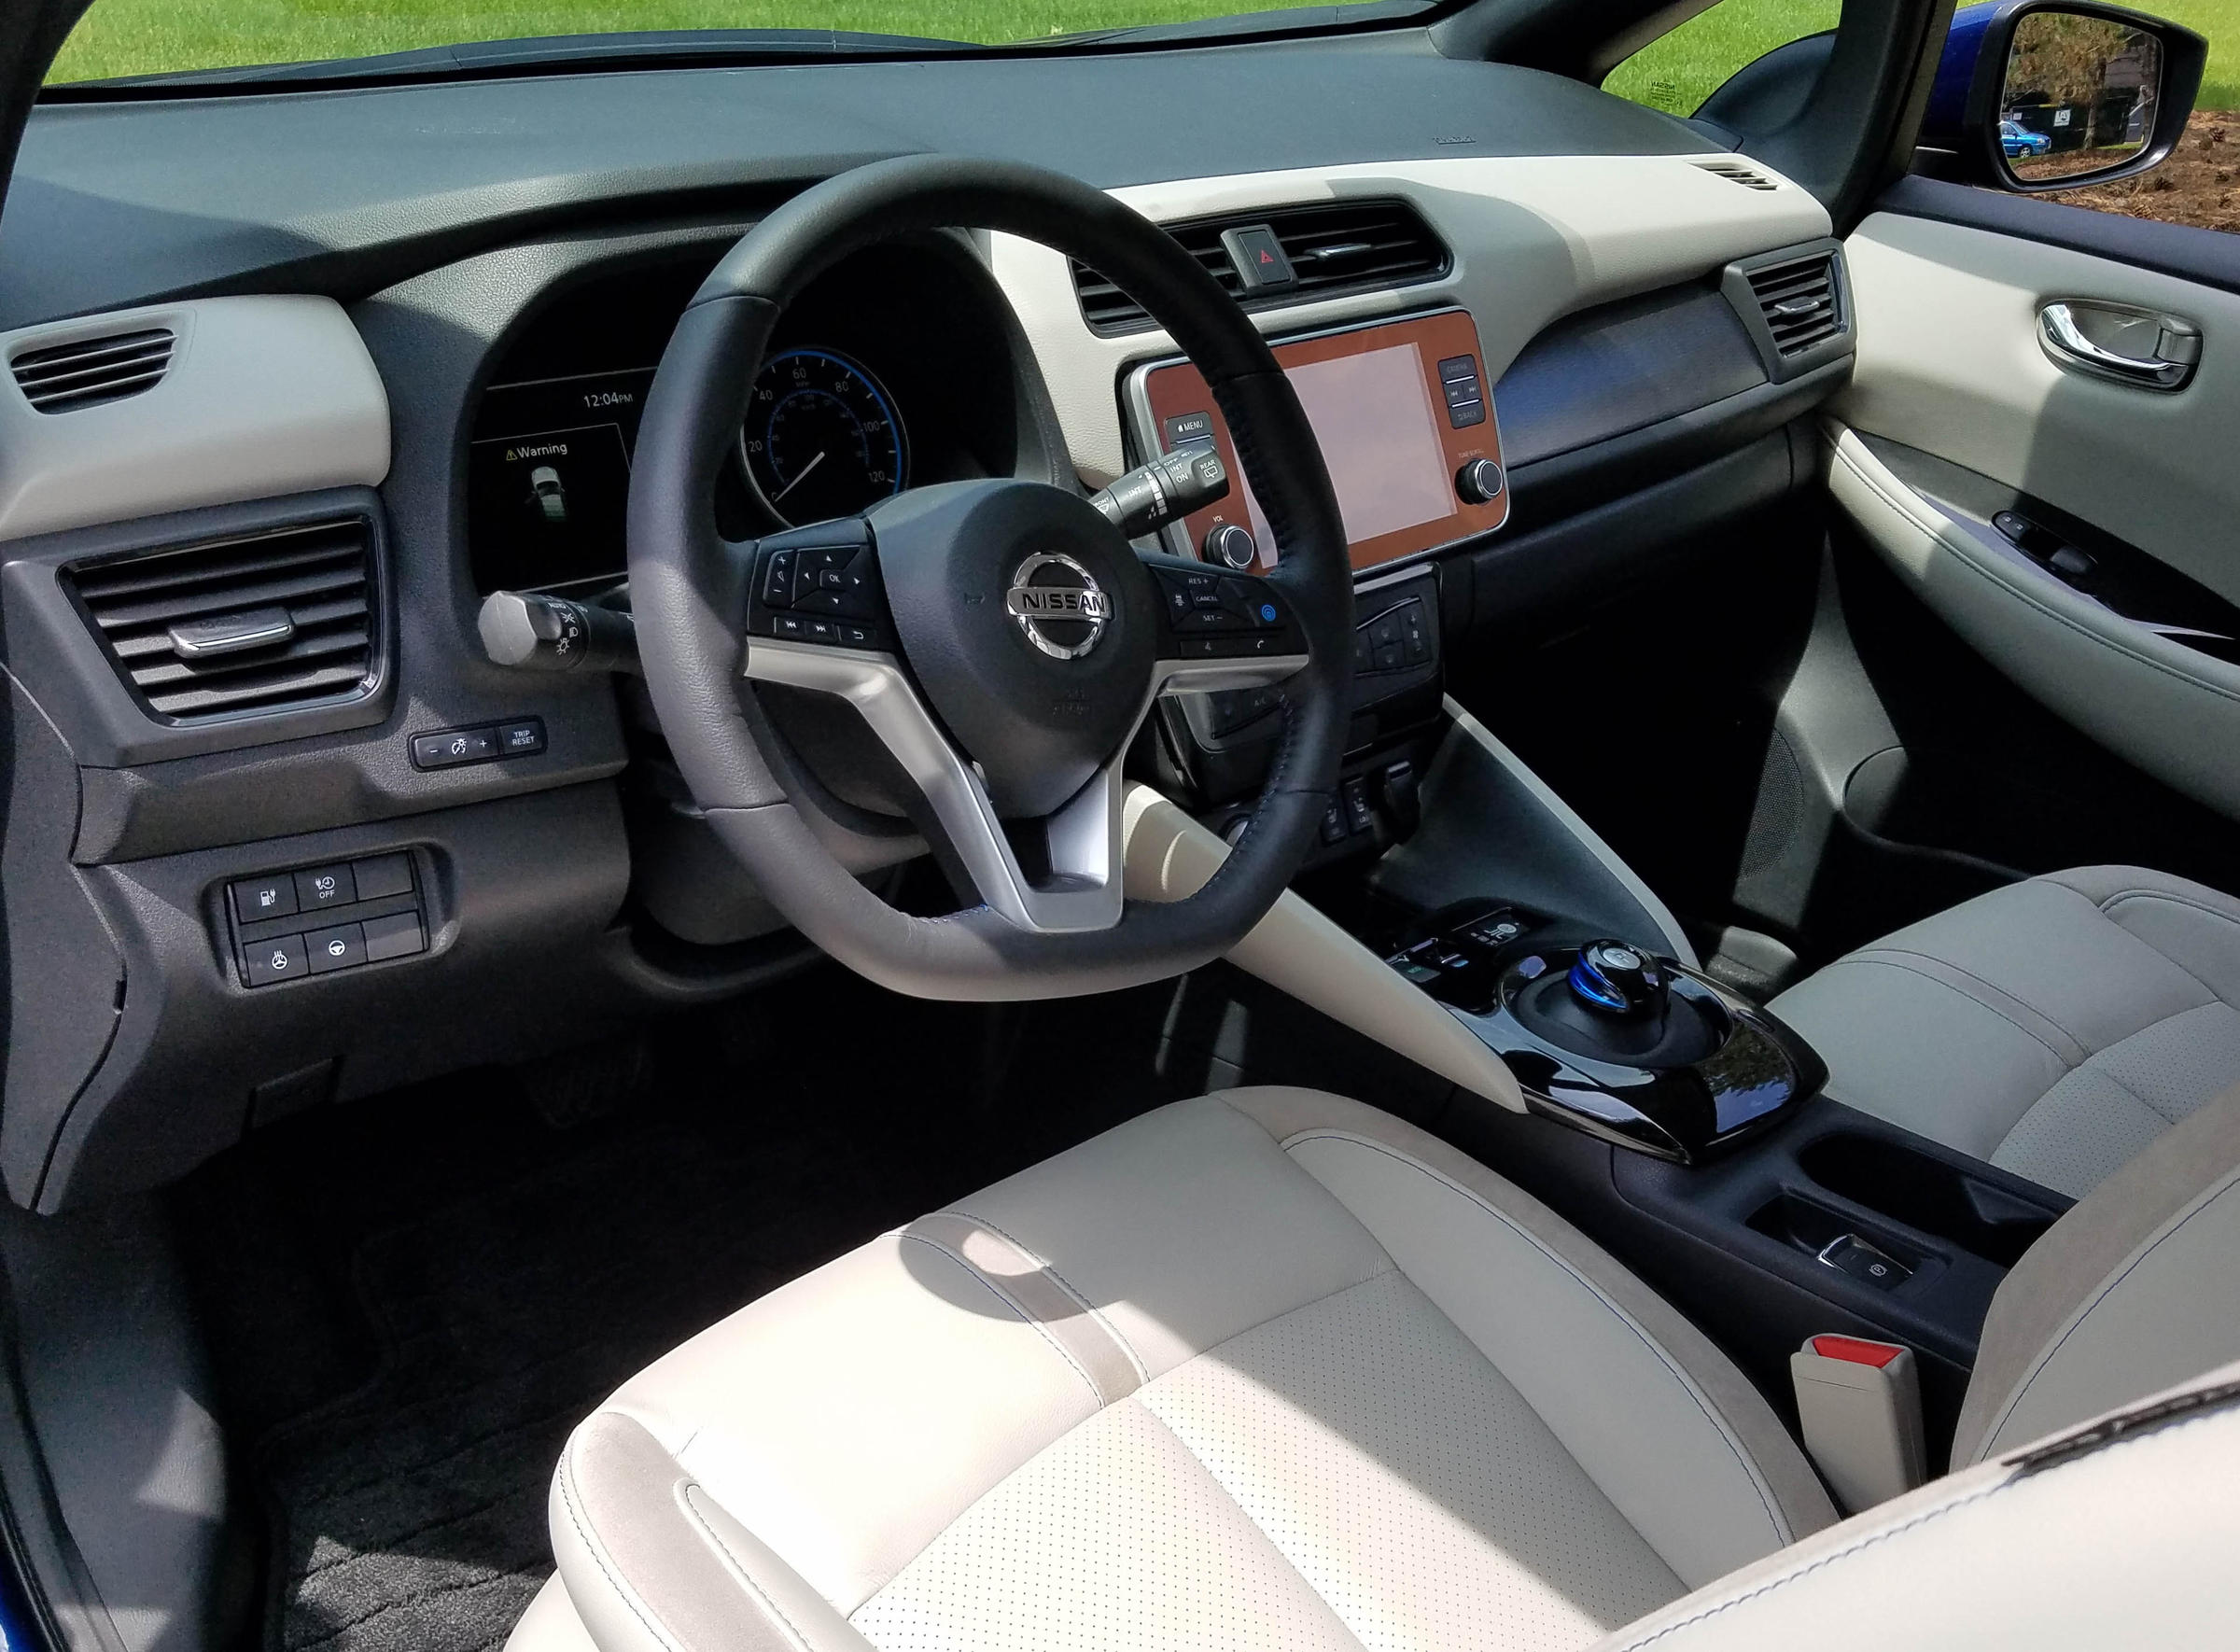 2019 Nissan Leaf Sl Plus Review Wuwm